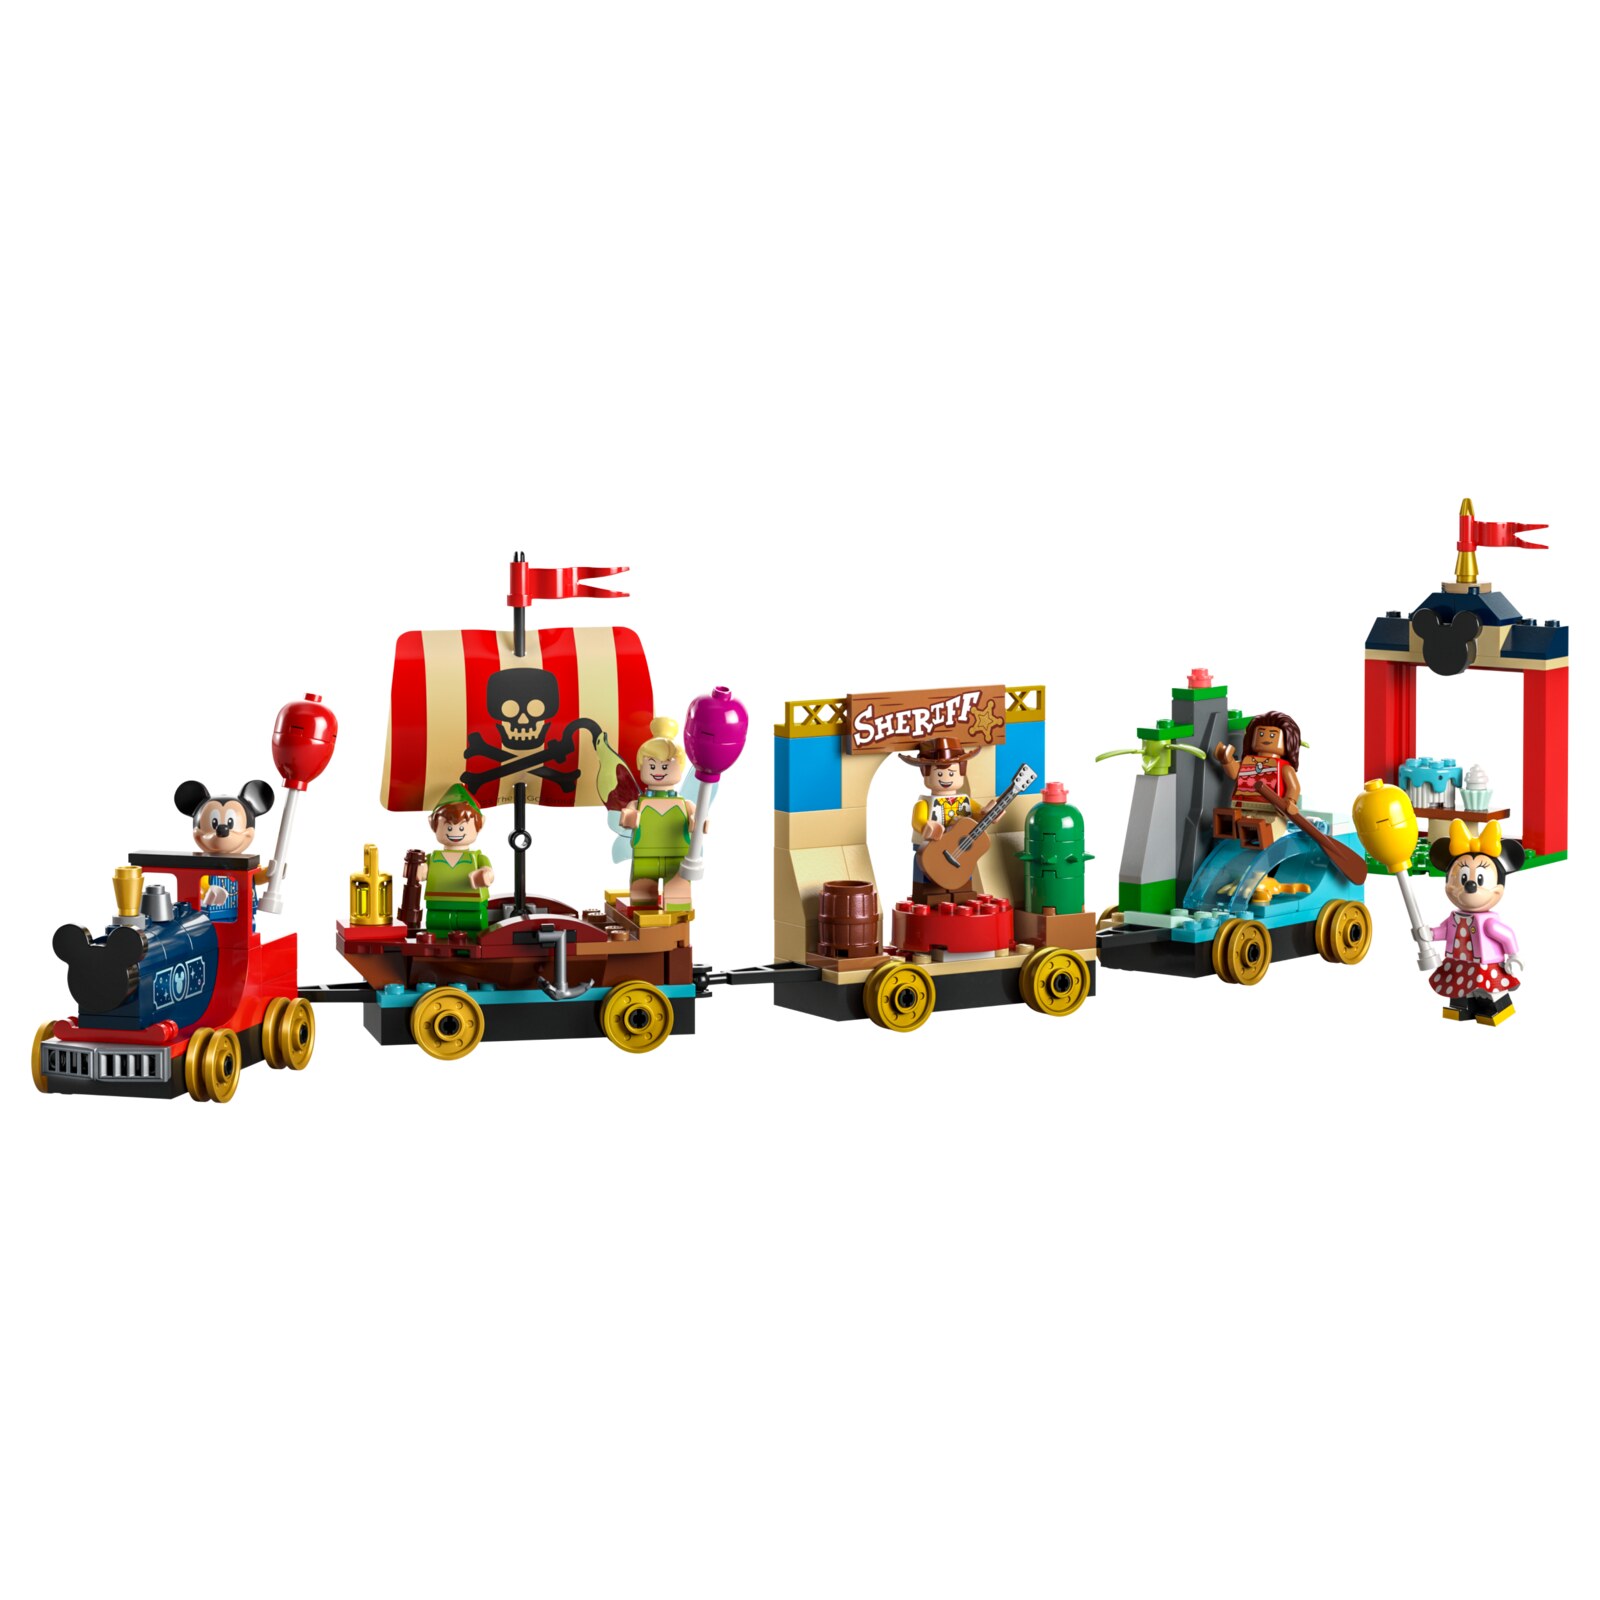 Конструктор LEGO Disney Праздничный поезд Диснея, 200 деталей, 43212 конструктор lego 10965 duplo bath time fun floating animal train прик ния в ванне поезд д зверей